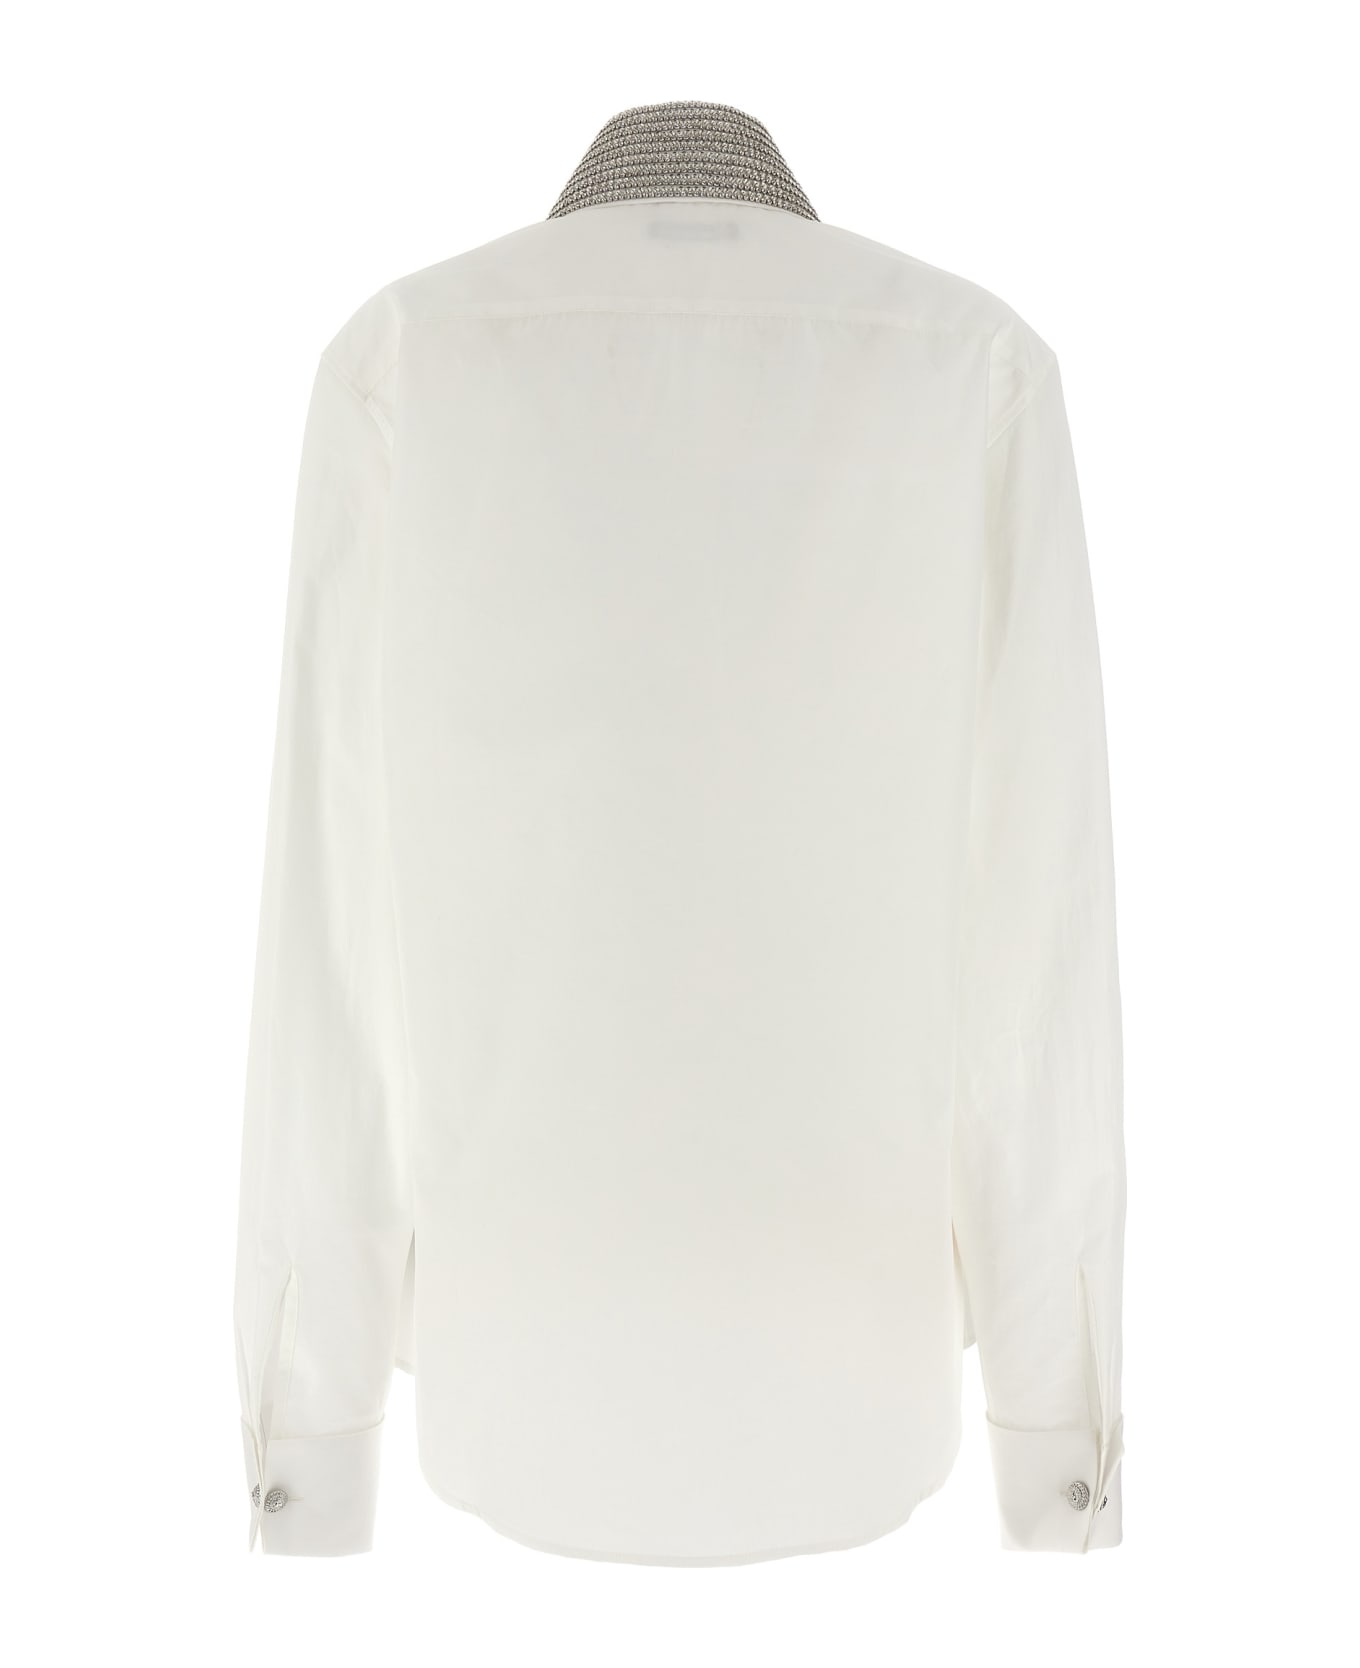 Balmain Jewel Collar Shirt - White